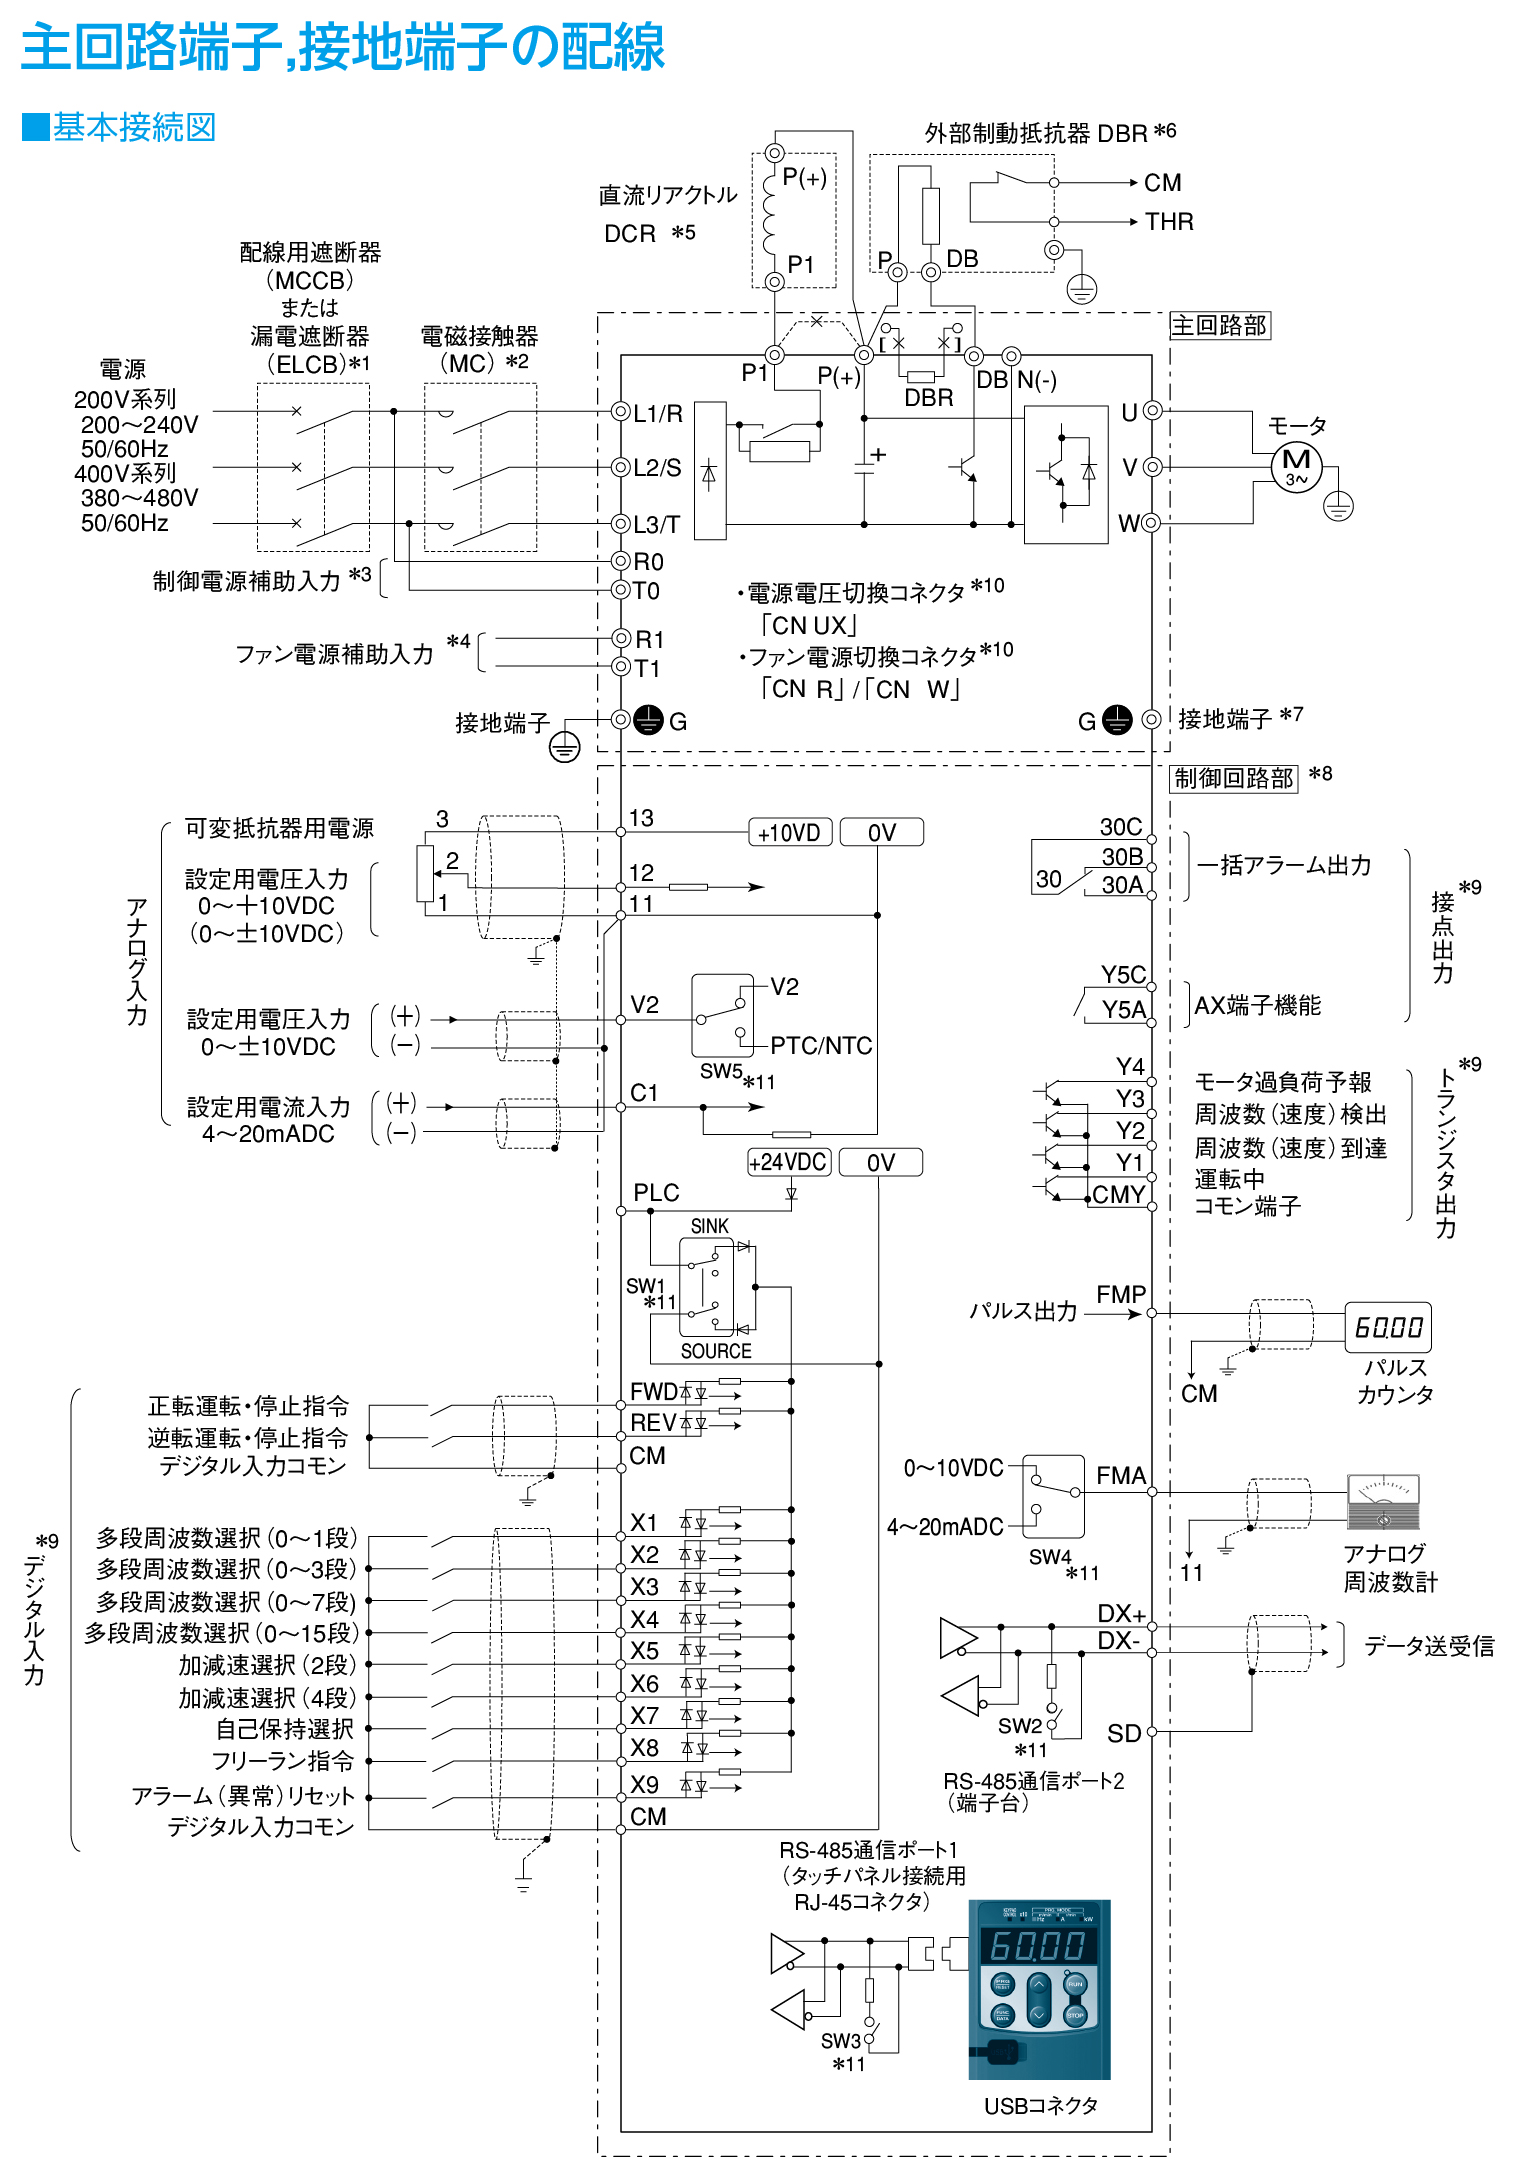 FRN280G1S-4Jの接続図